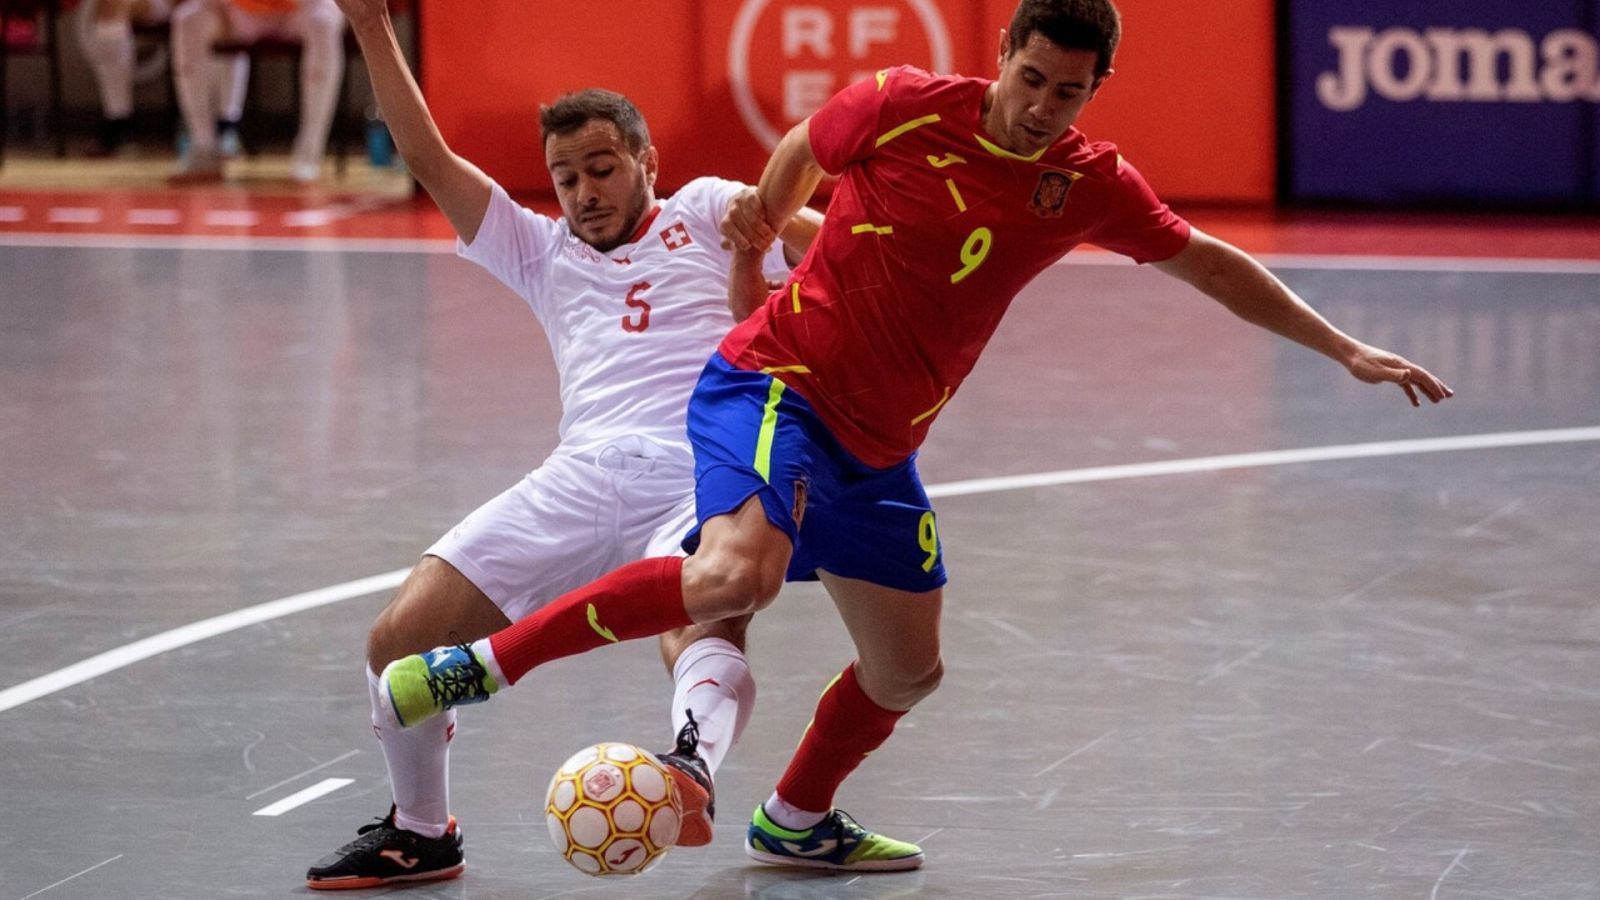 Fútbol Sala - Clasificación Campeonato de Europa. 2ª jornada: Suiza - España